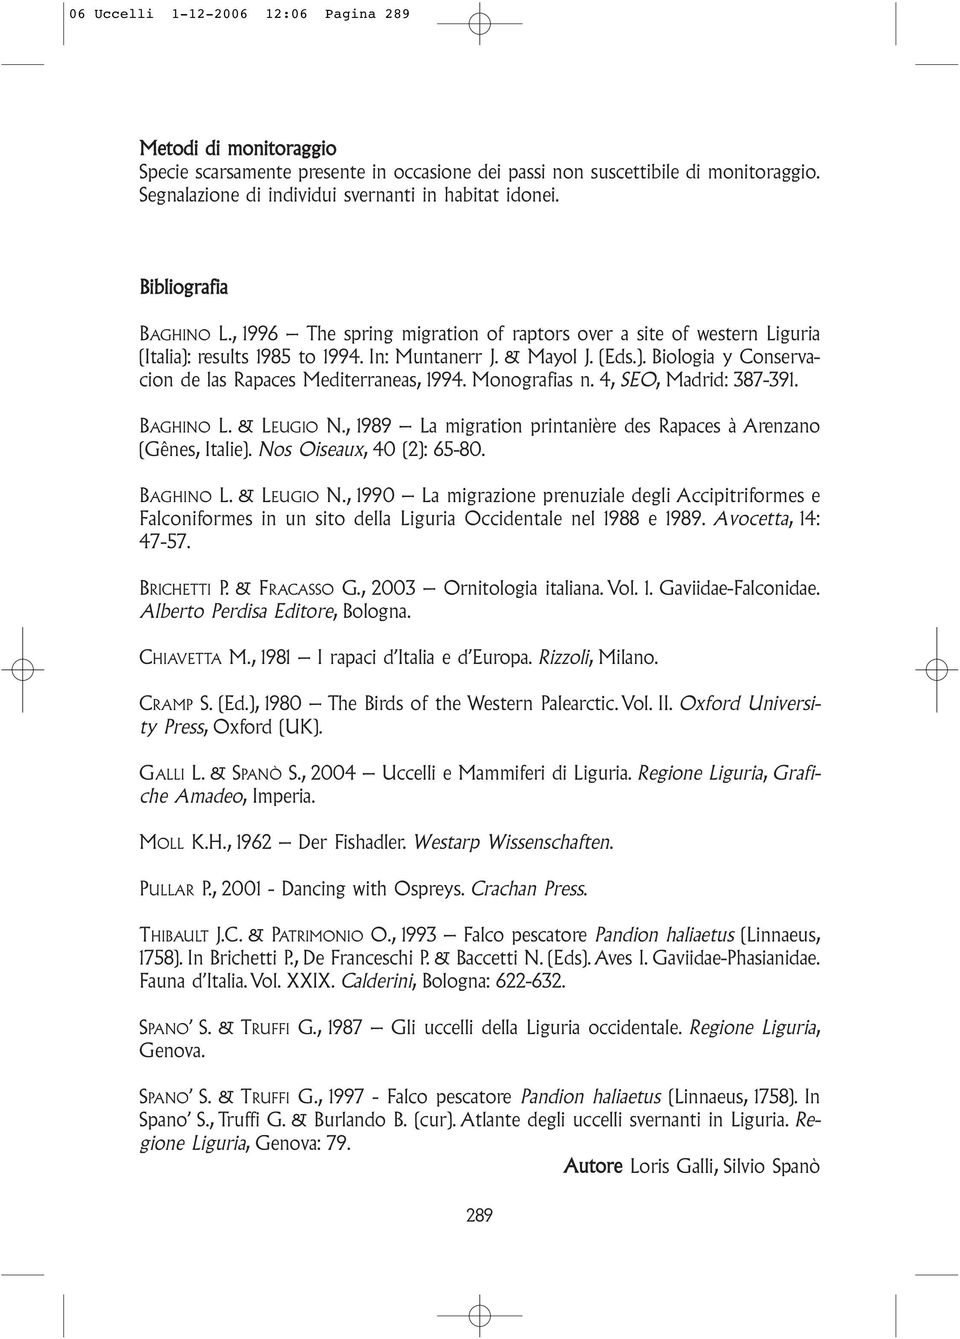 Monografias n. 4, SEO, Madrid: 387-391. BAGHINO L. & LEUGIO N., 1989 La migration printanière des Rapaces à Arenzano (Gênes, Italie). Nos Oiseaux, 40 (2): 65-80. BAGHINO L. & LEUGIO N., 1990 La migrazione prenuziale degli Accipitriformes e Falconiformes in un sito della Liguria Occidentale nel 1988 e 1989.